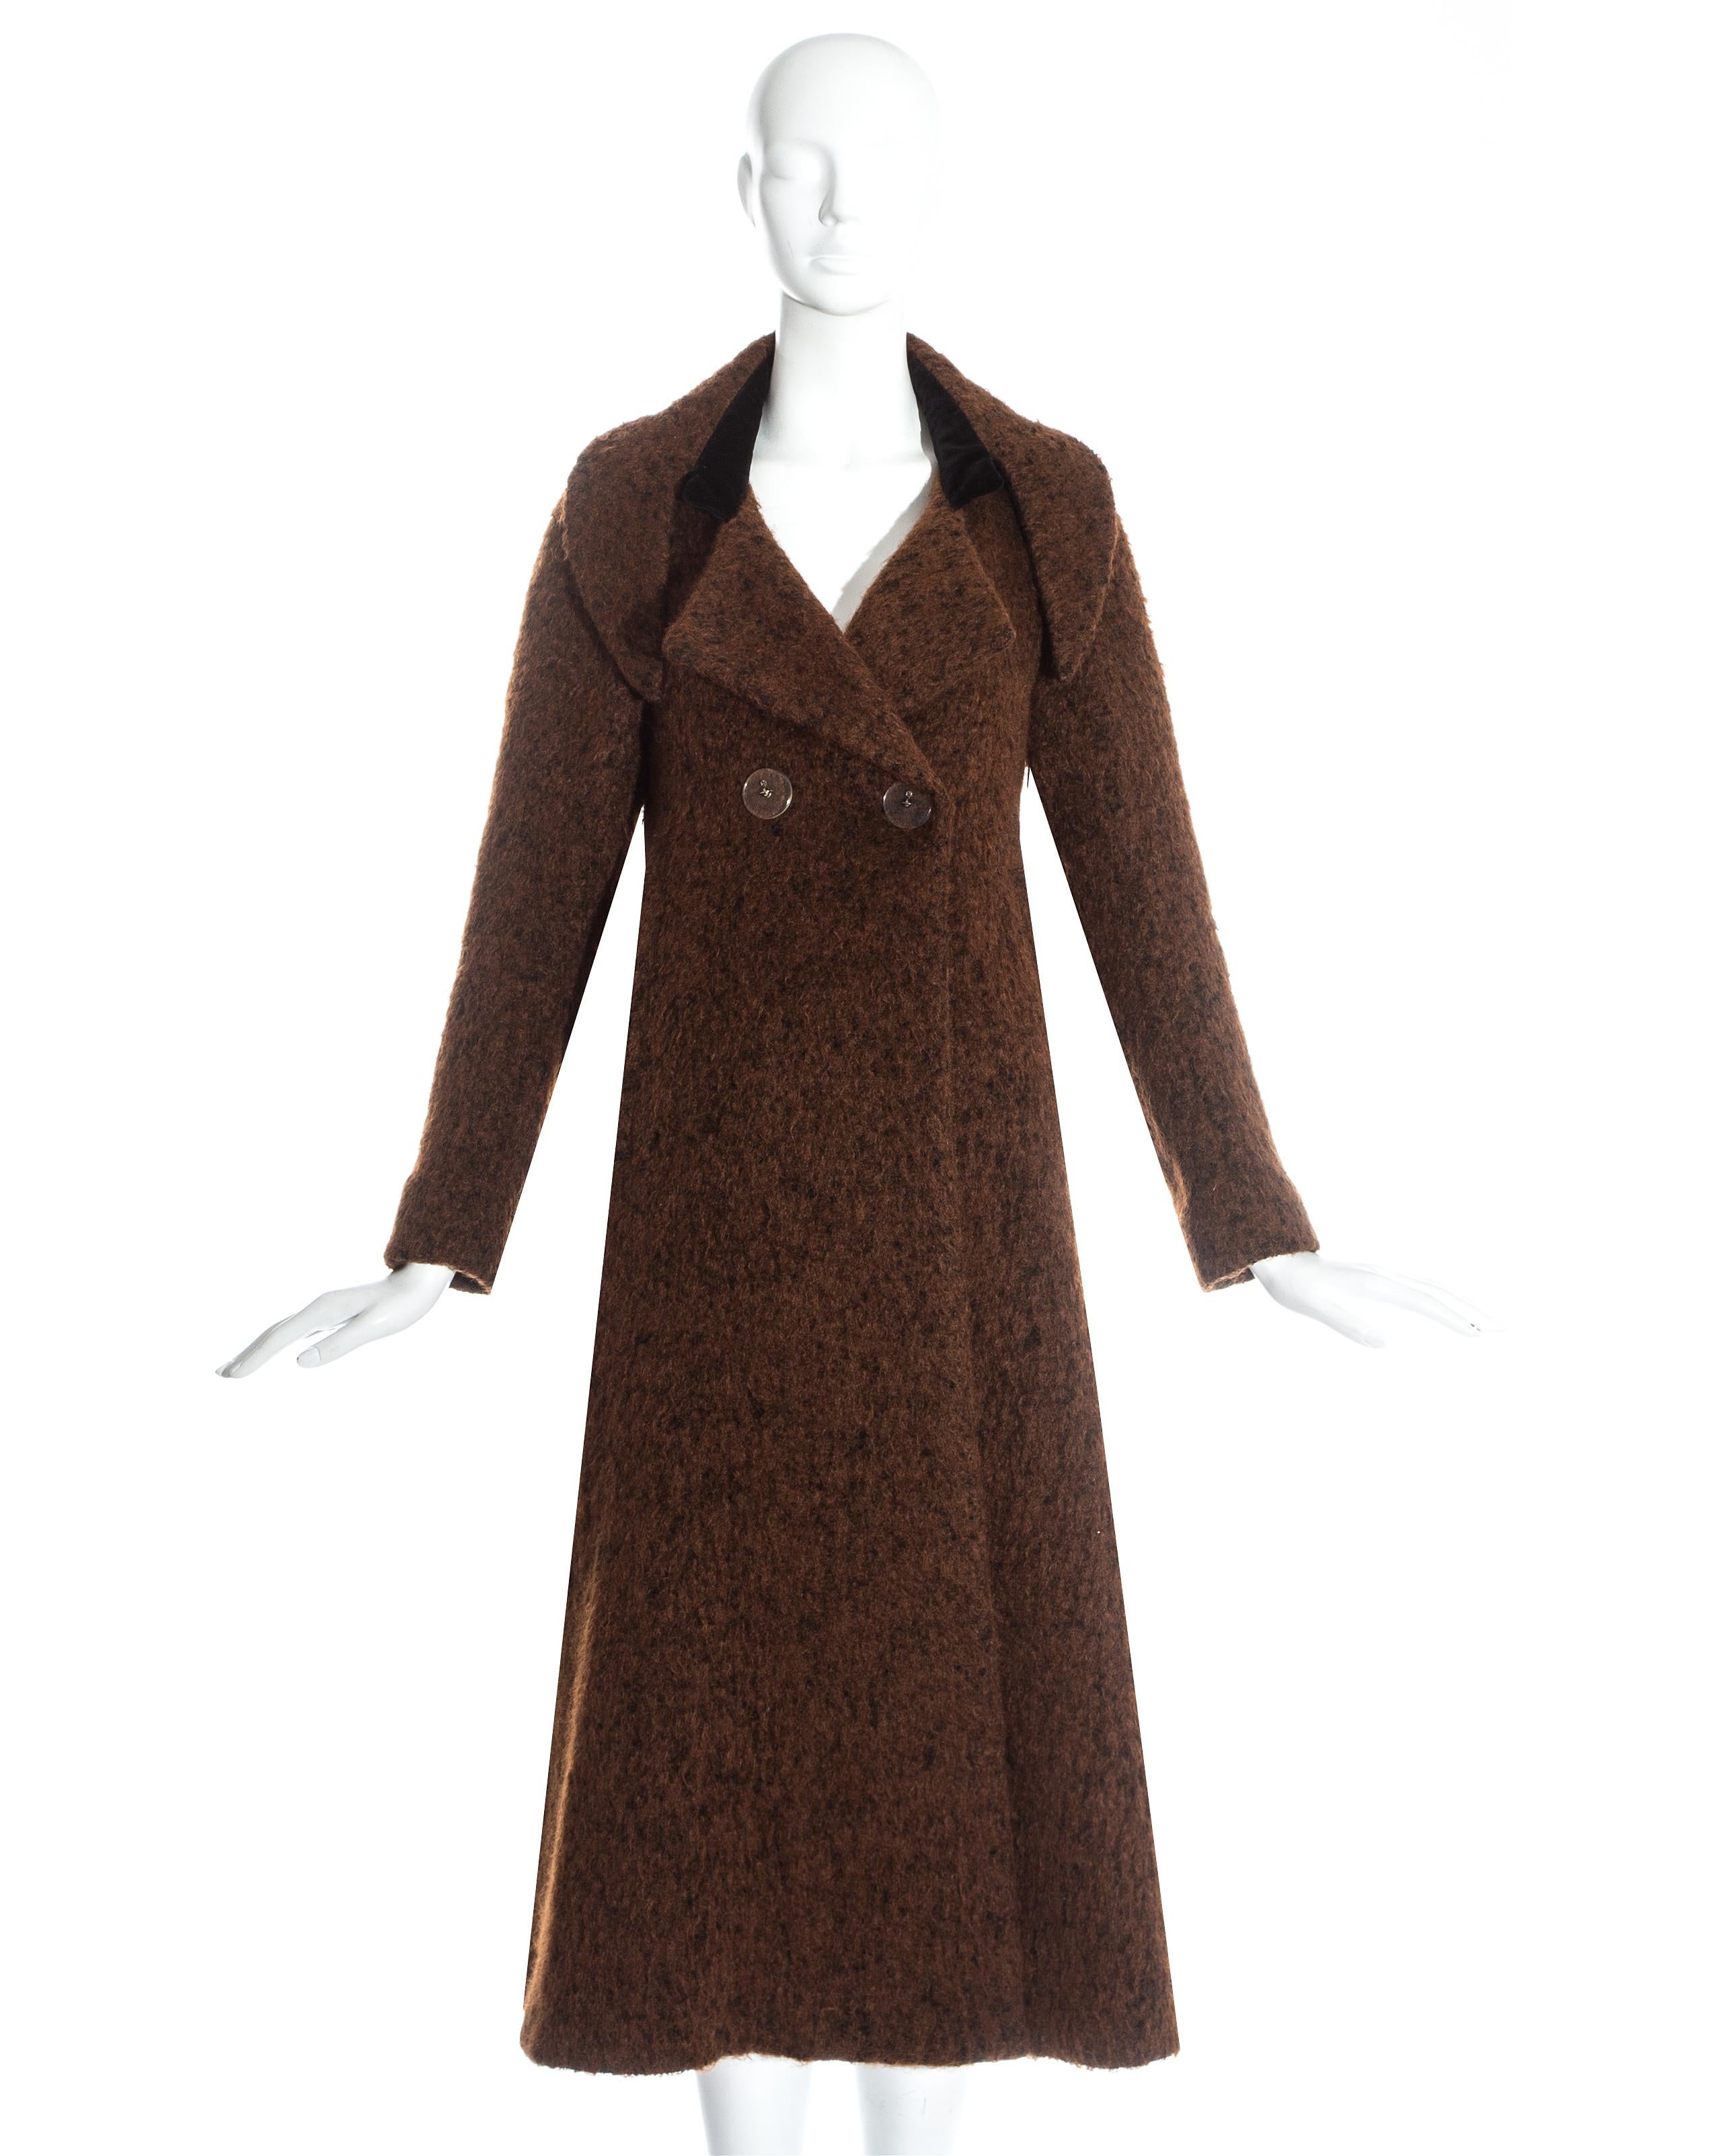 Manteau swing en laine marron Vivienne Westwood avec velours. Revers inversés surdimensionnés, grand bouton Orb en plexiglas et panneau arrière volumineux. 

Portrait, automne-hiver 1990 